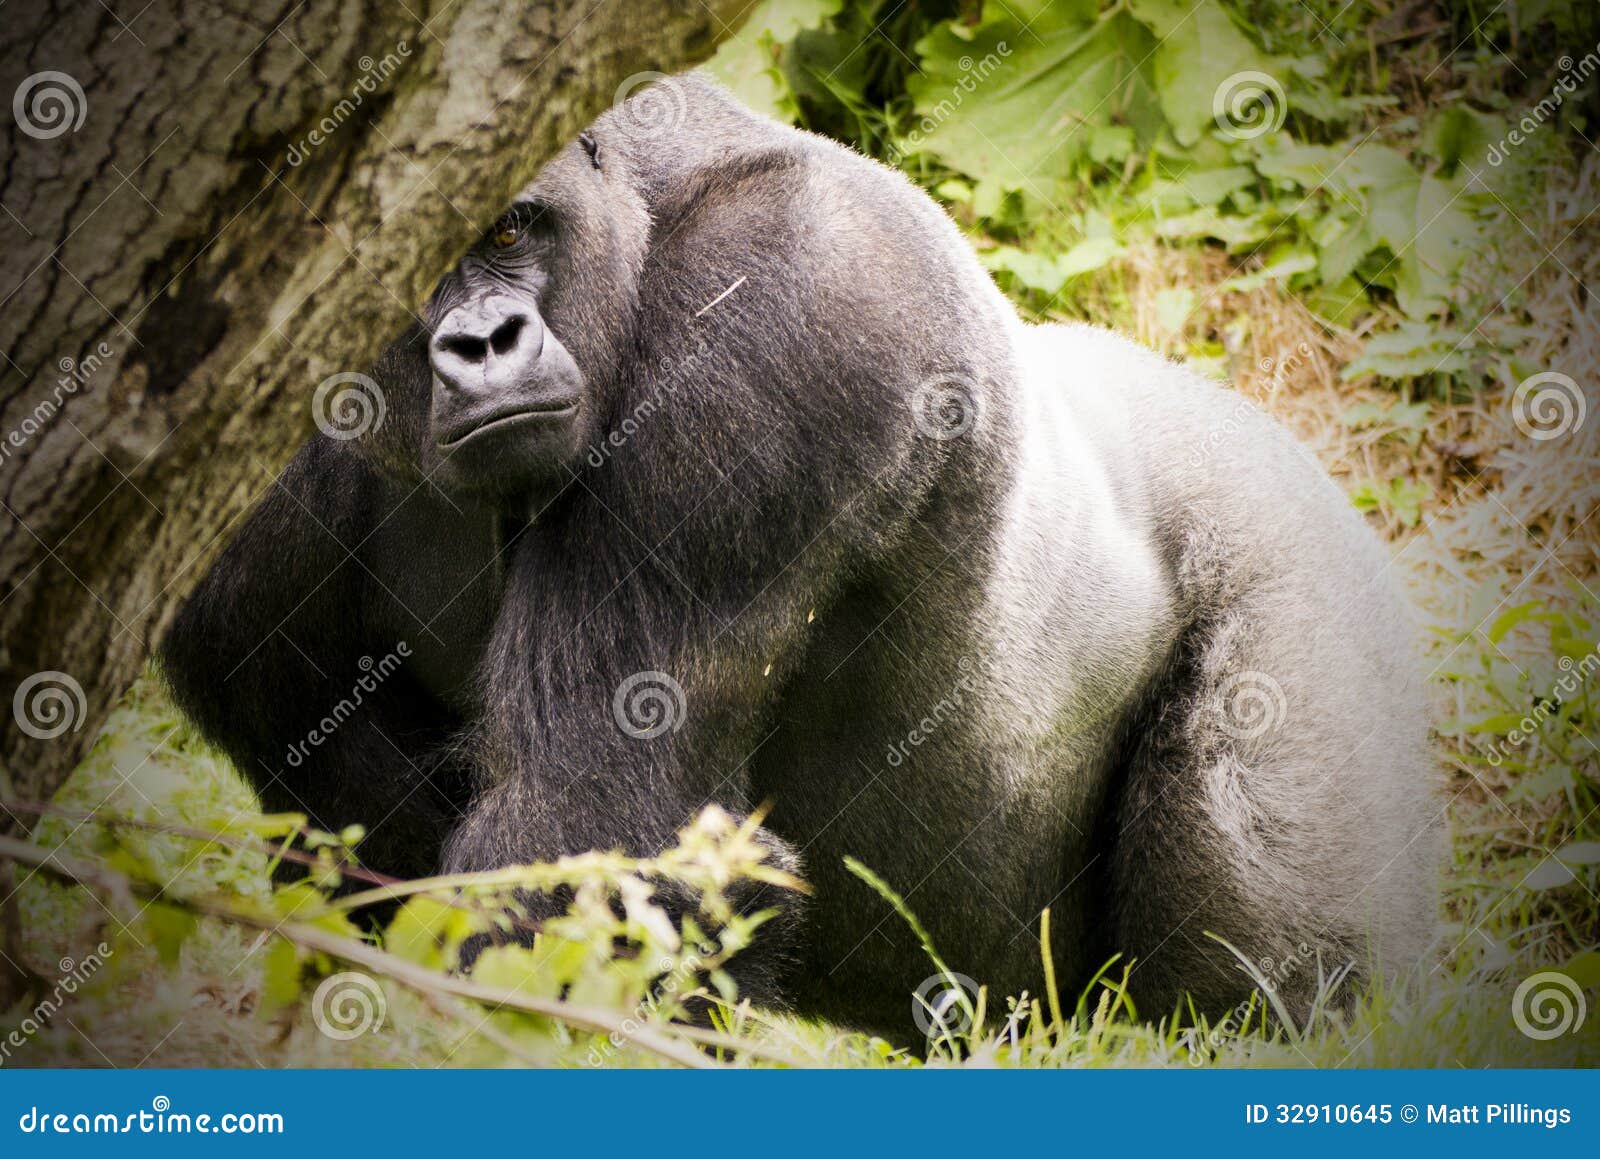 Gorilla Hide Stock Photos